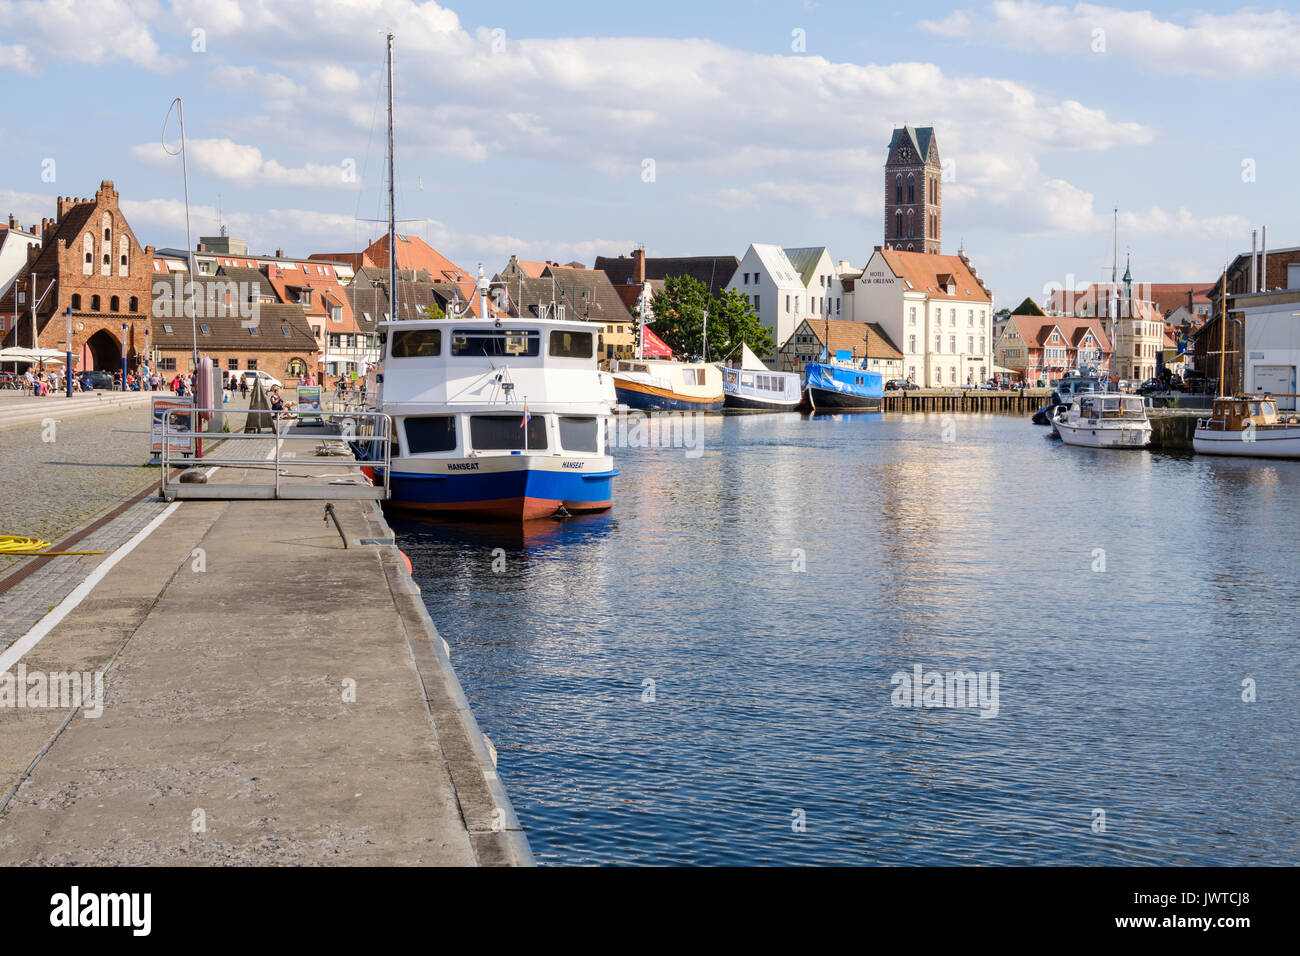 Hafen Alter Hafen mit dem Wassertor Tor im Hintergrund, Wismar, Mecklenburg-Vorpommern, Deutschland Stockfoto